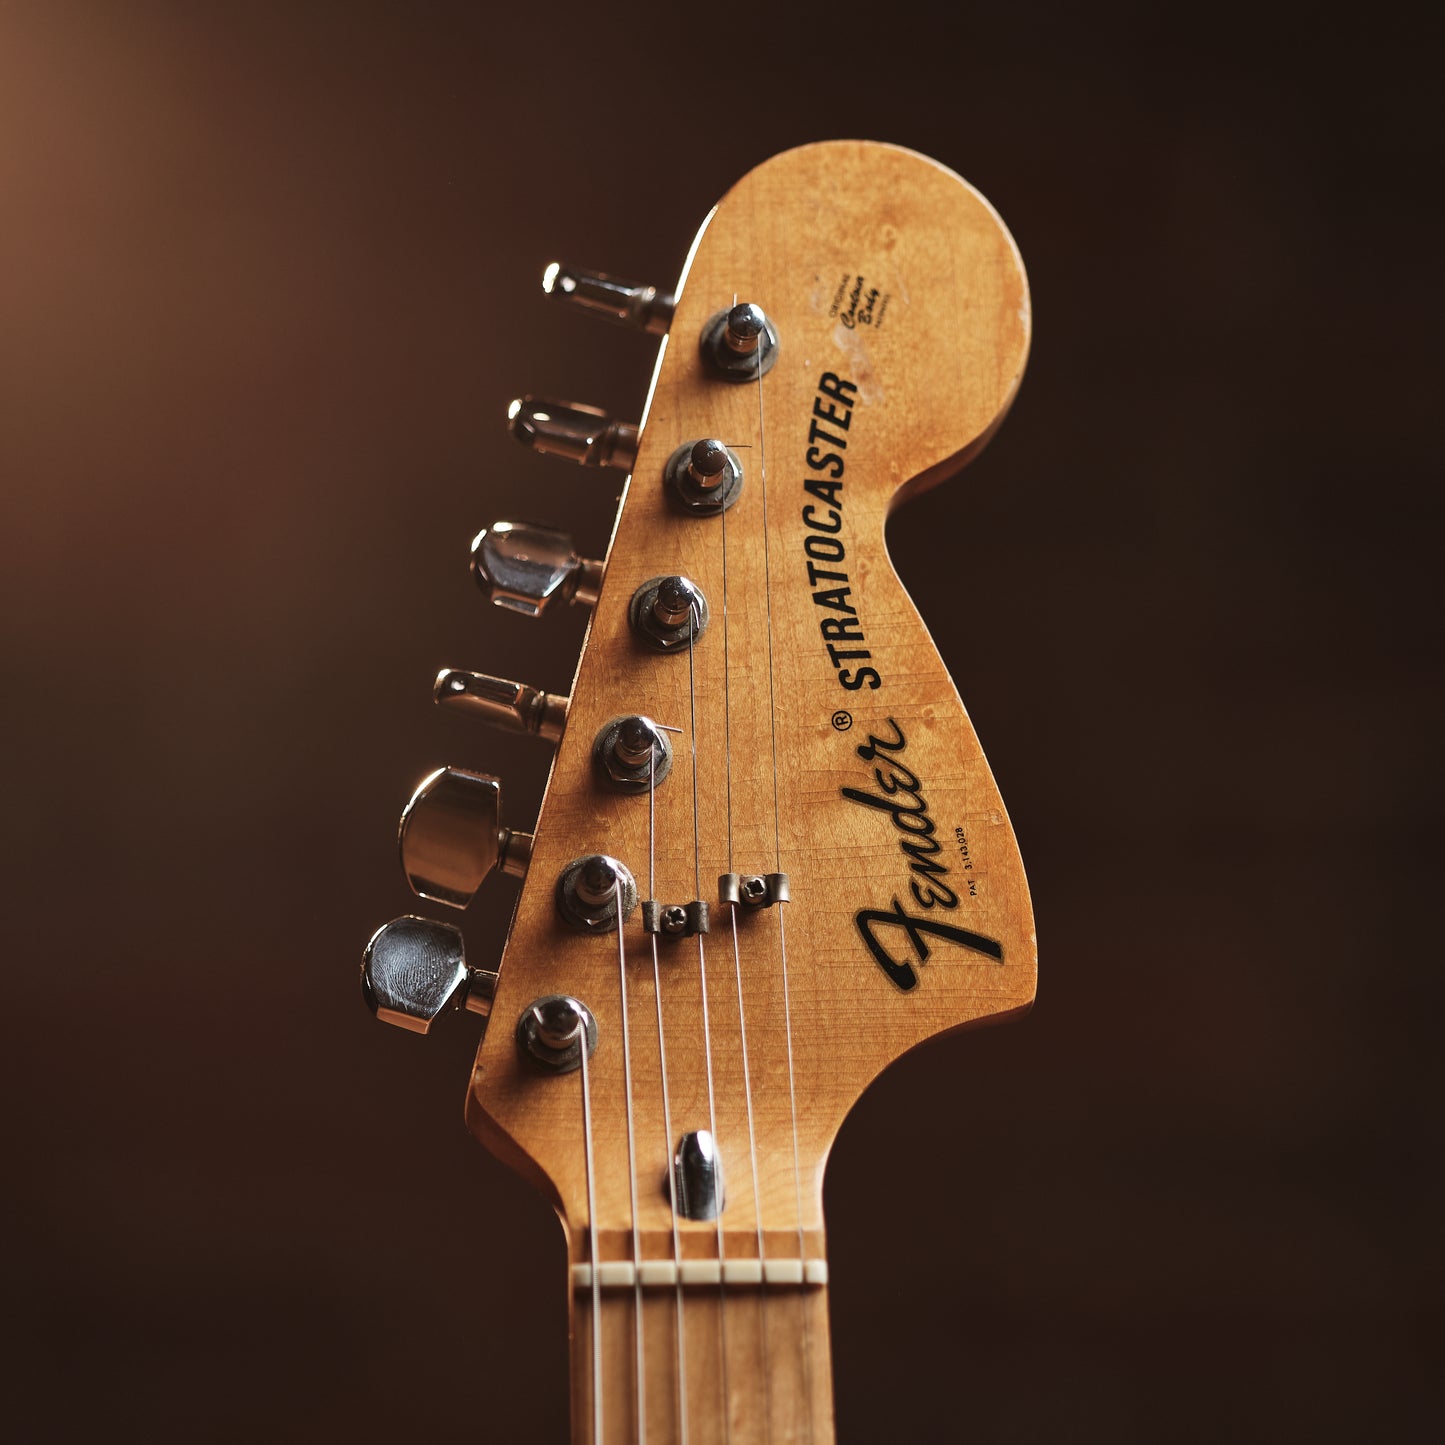 1972 Fender Stratocaster